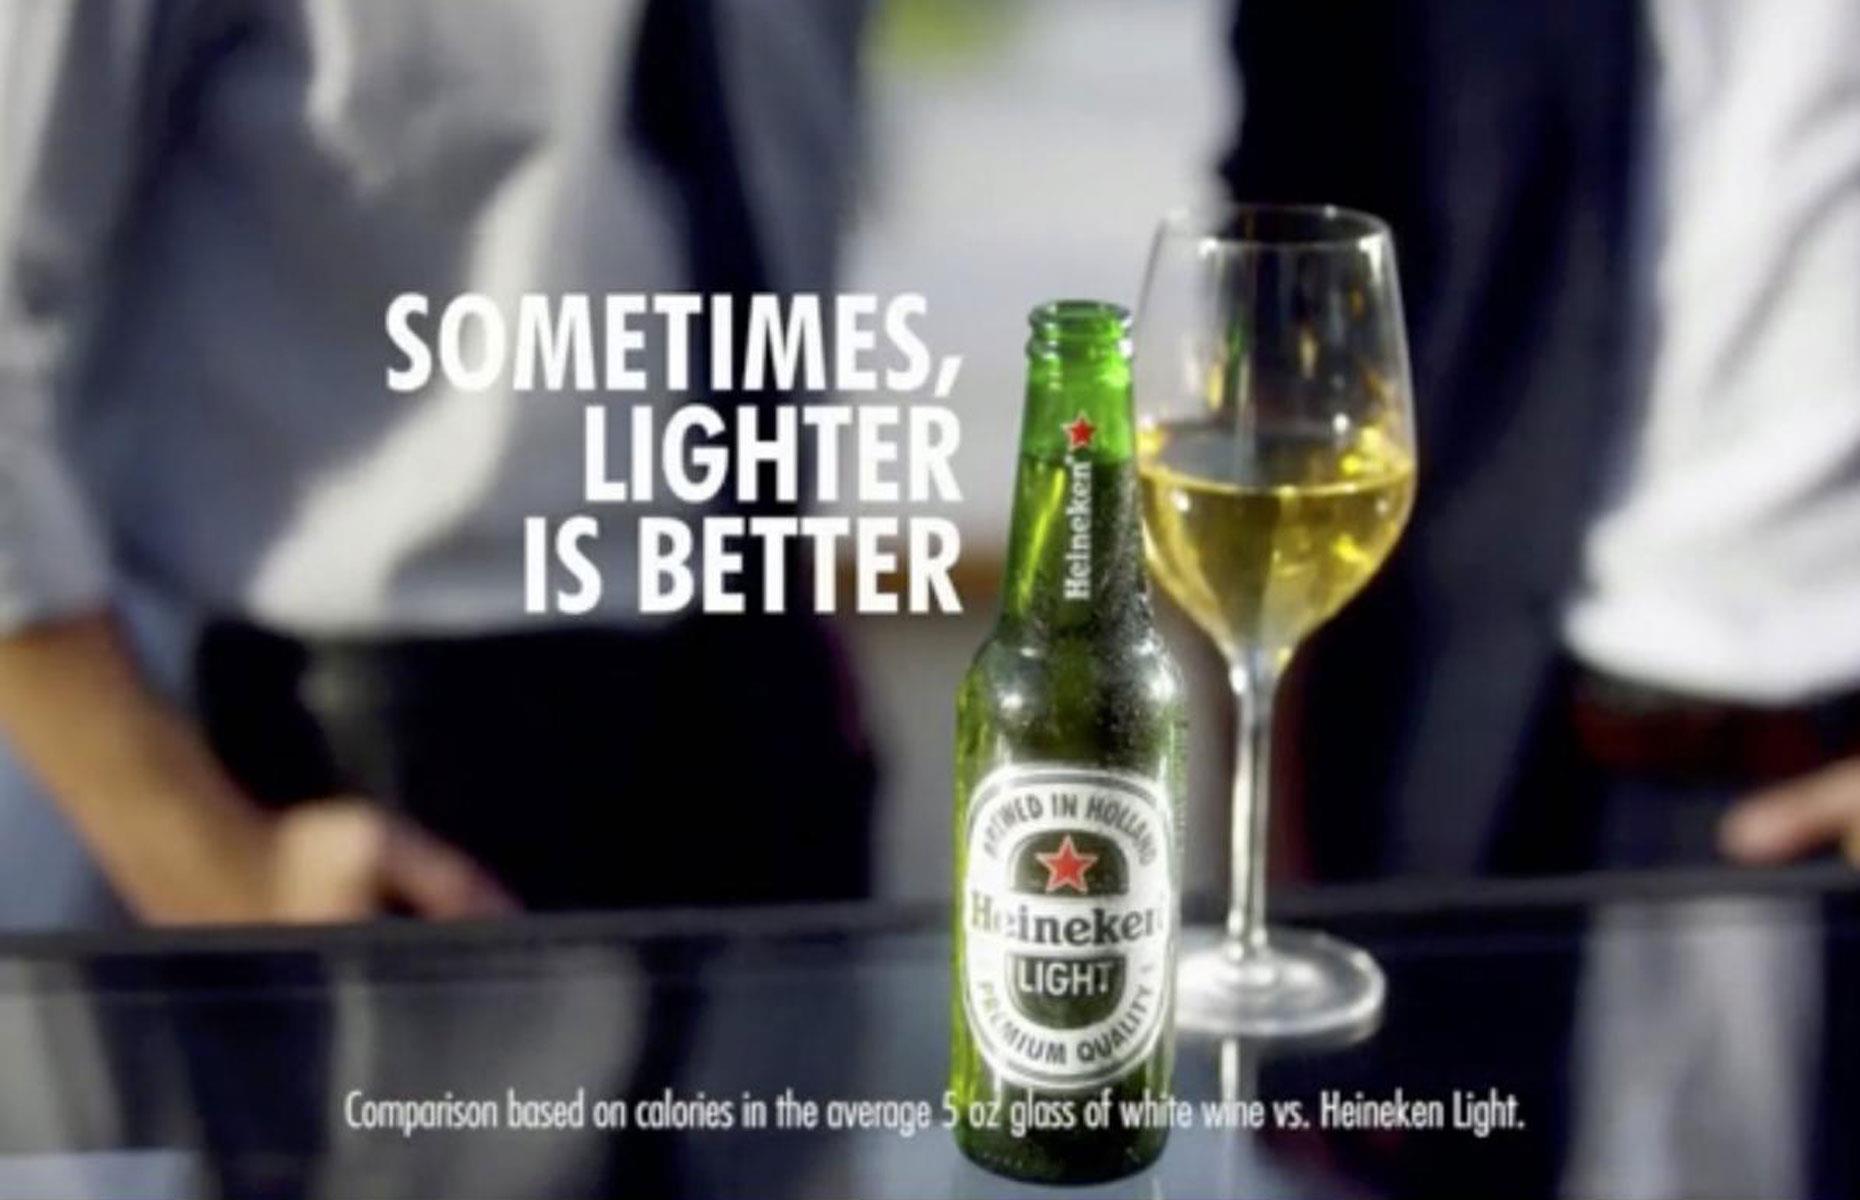 Heineken's "sometimes, lighter is better" ad gaffe